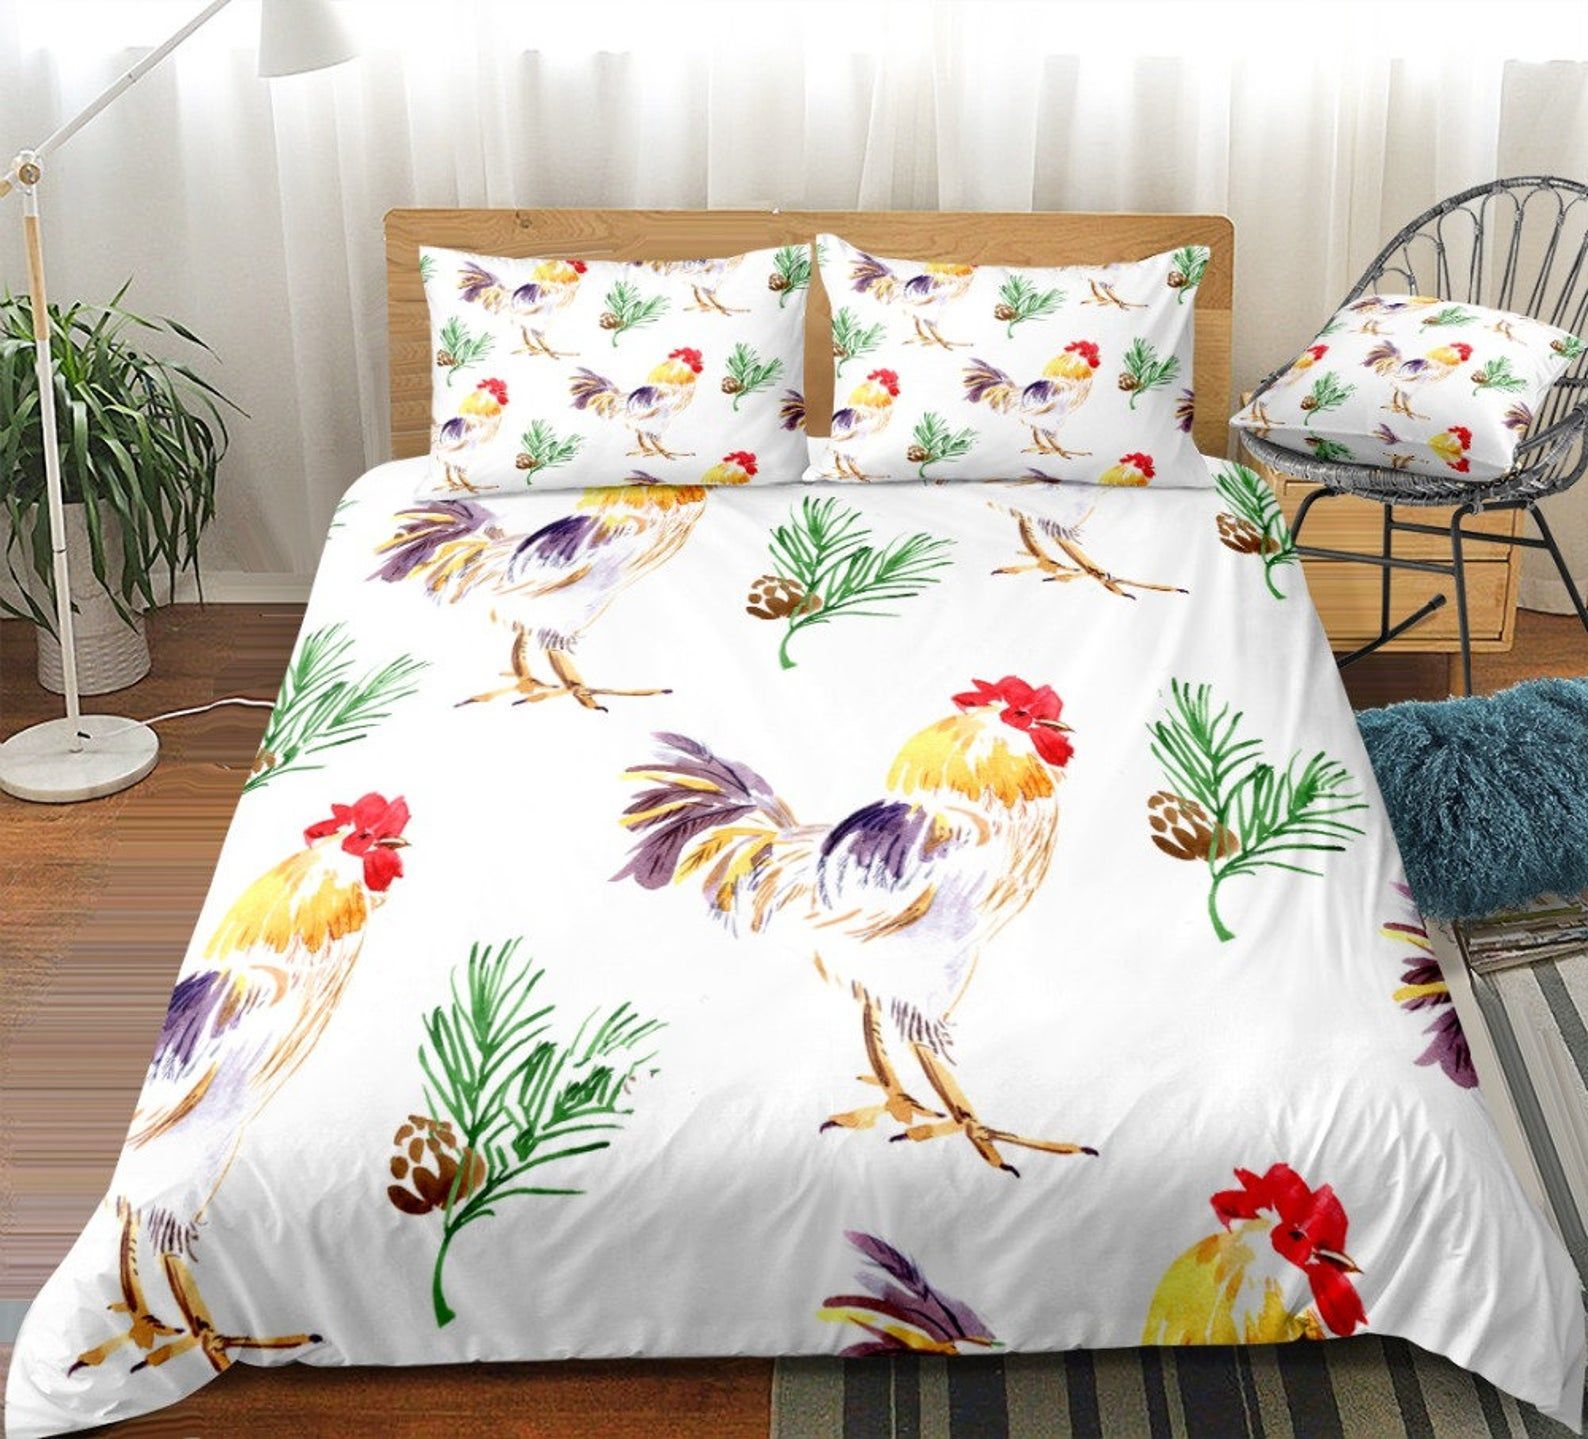 Rooster Bedding Set Bed Sheets Spread Comforter Duvet Cover Bedding Sets